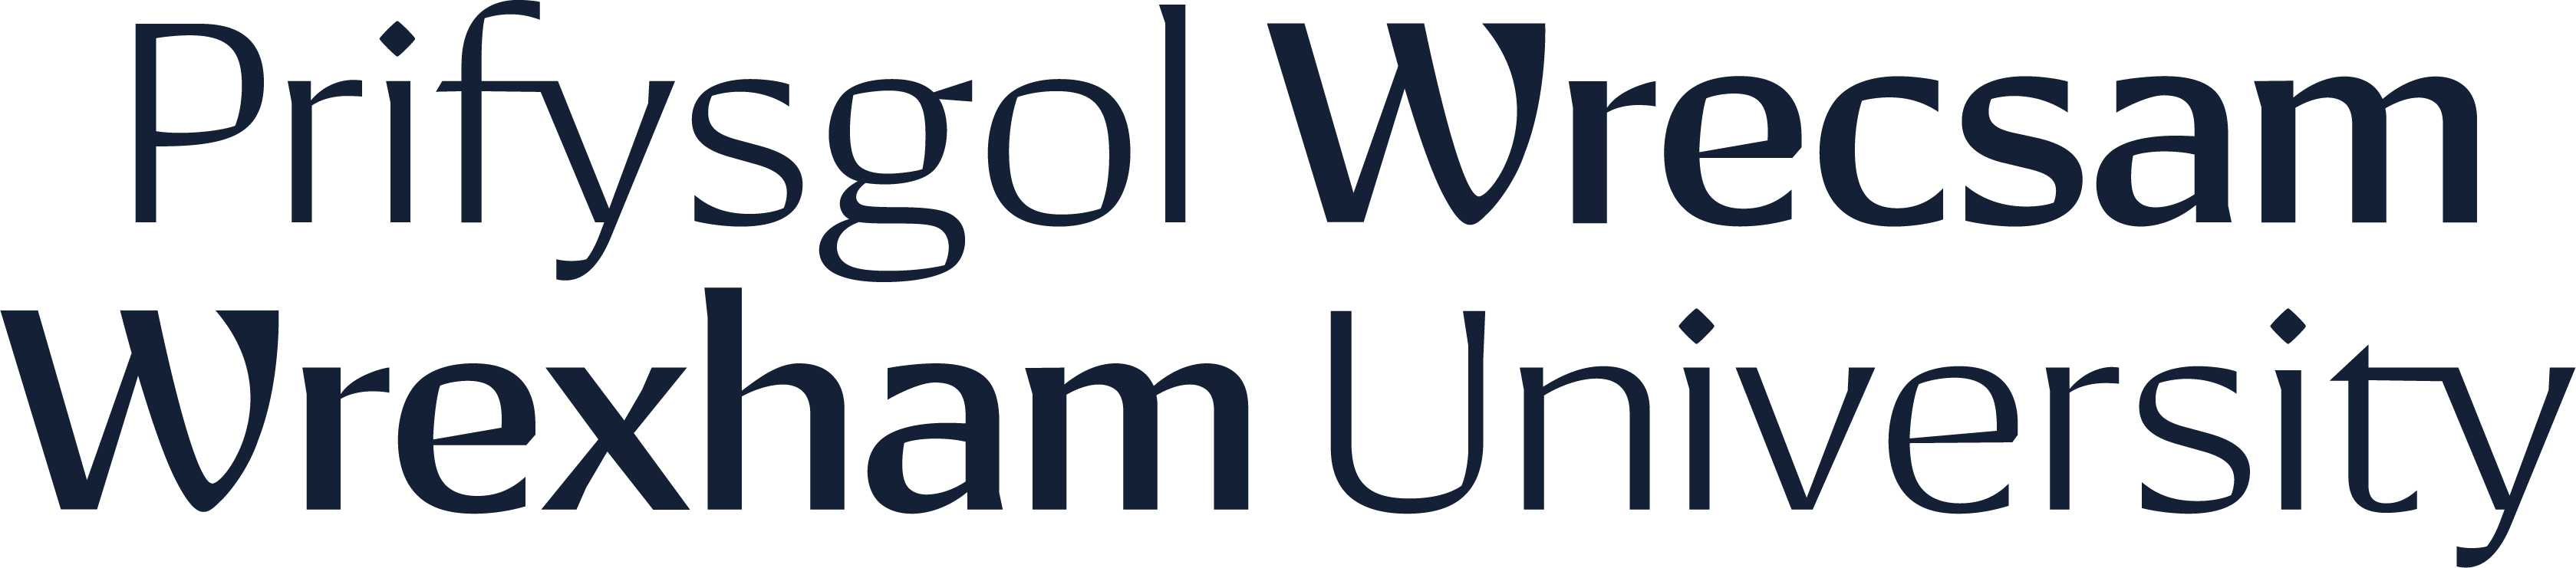 wrexham-university-open-day